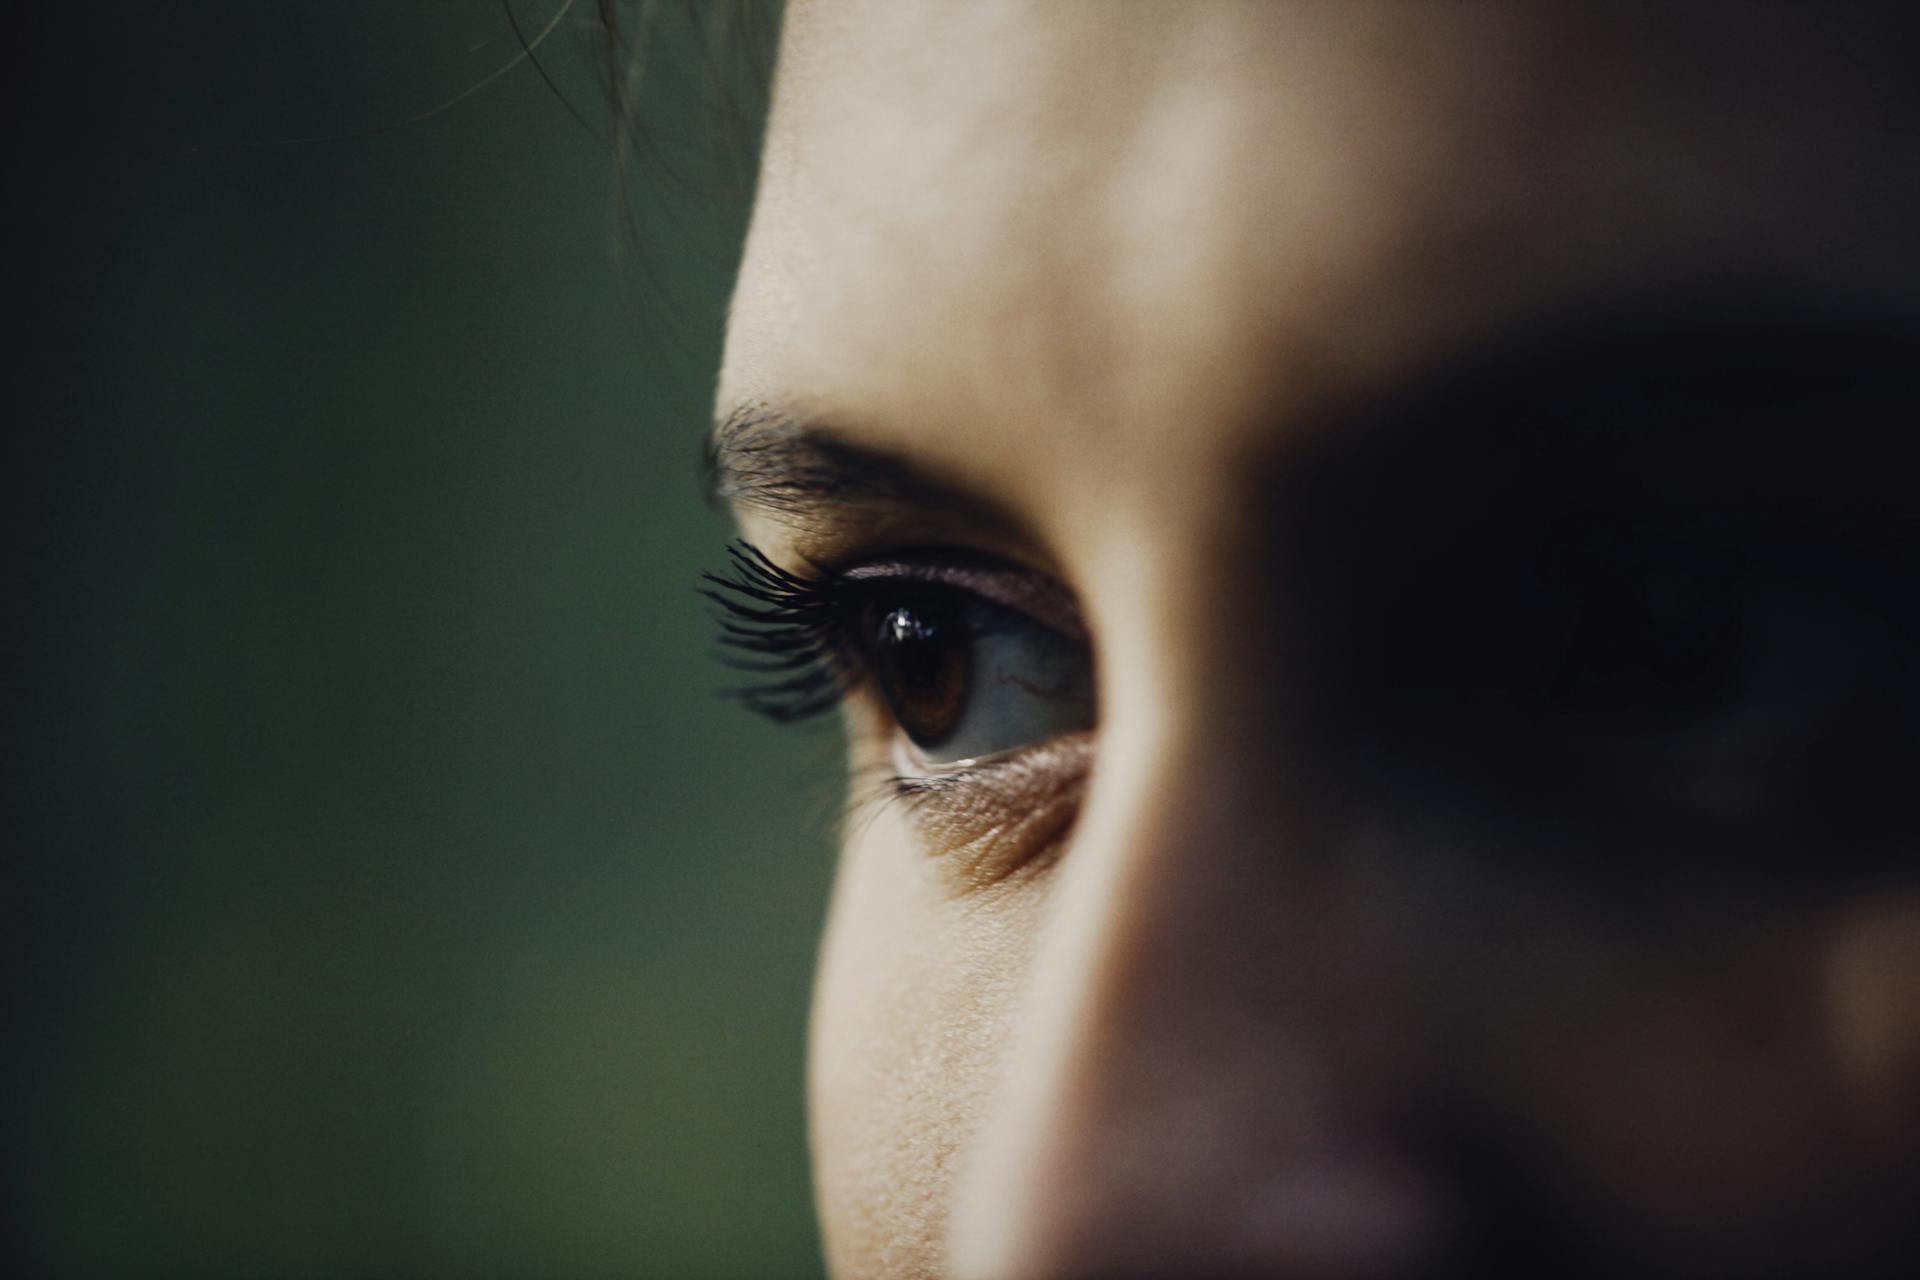 A woman's eye | Source: Pexels